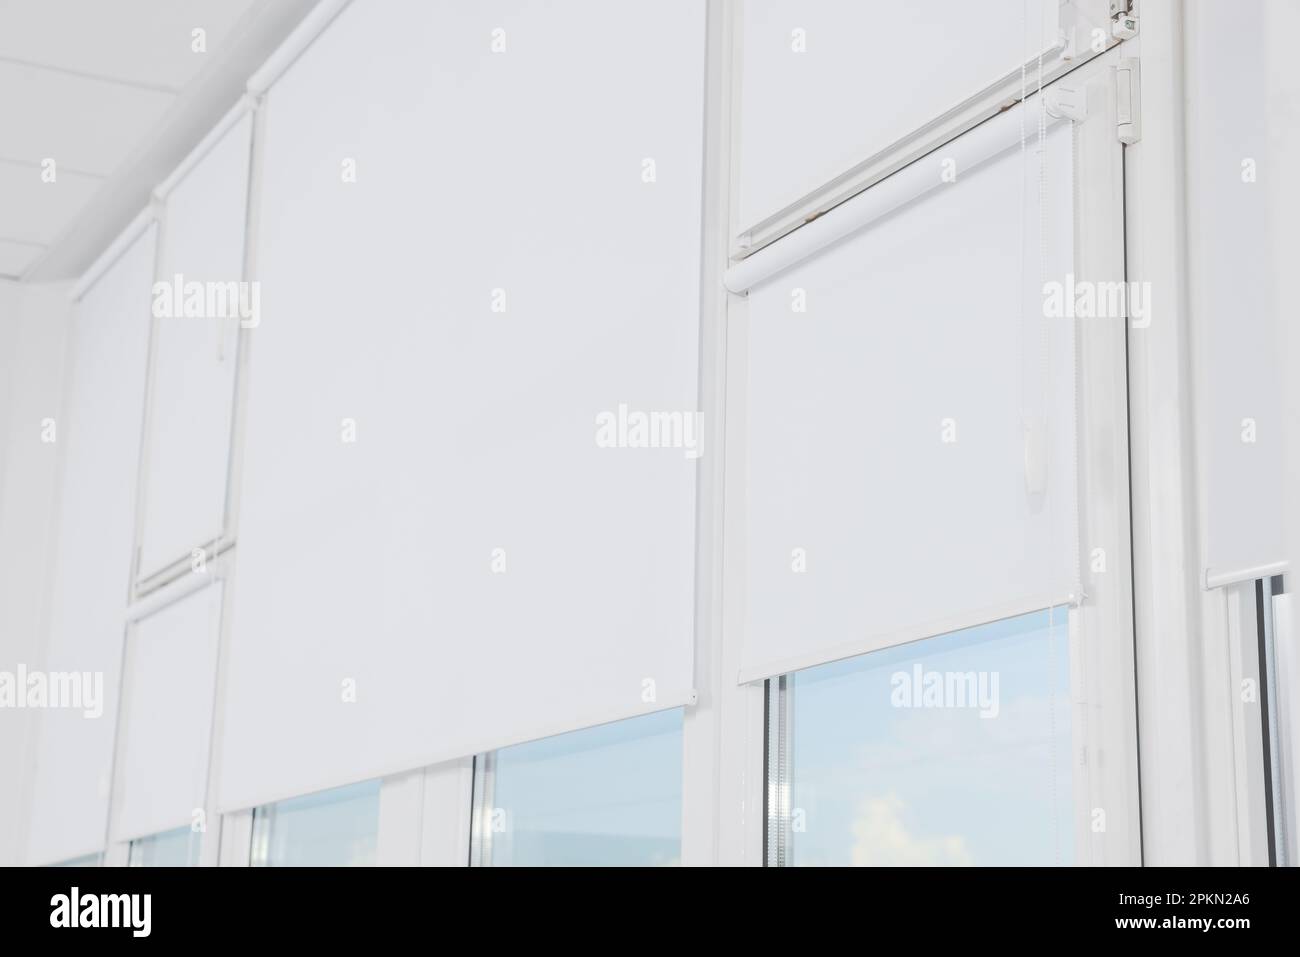 Gran ventana con persianas enrollables blancas en el interior